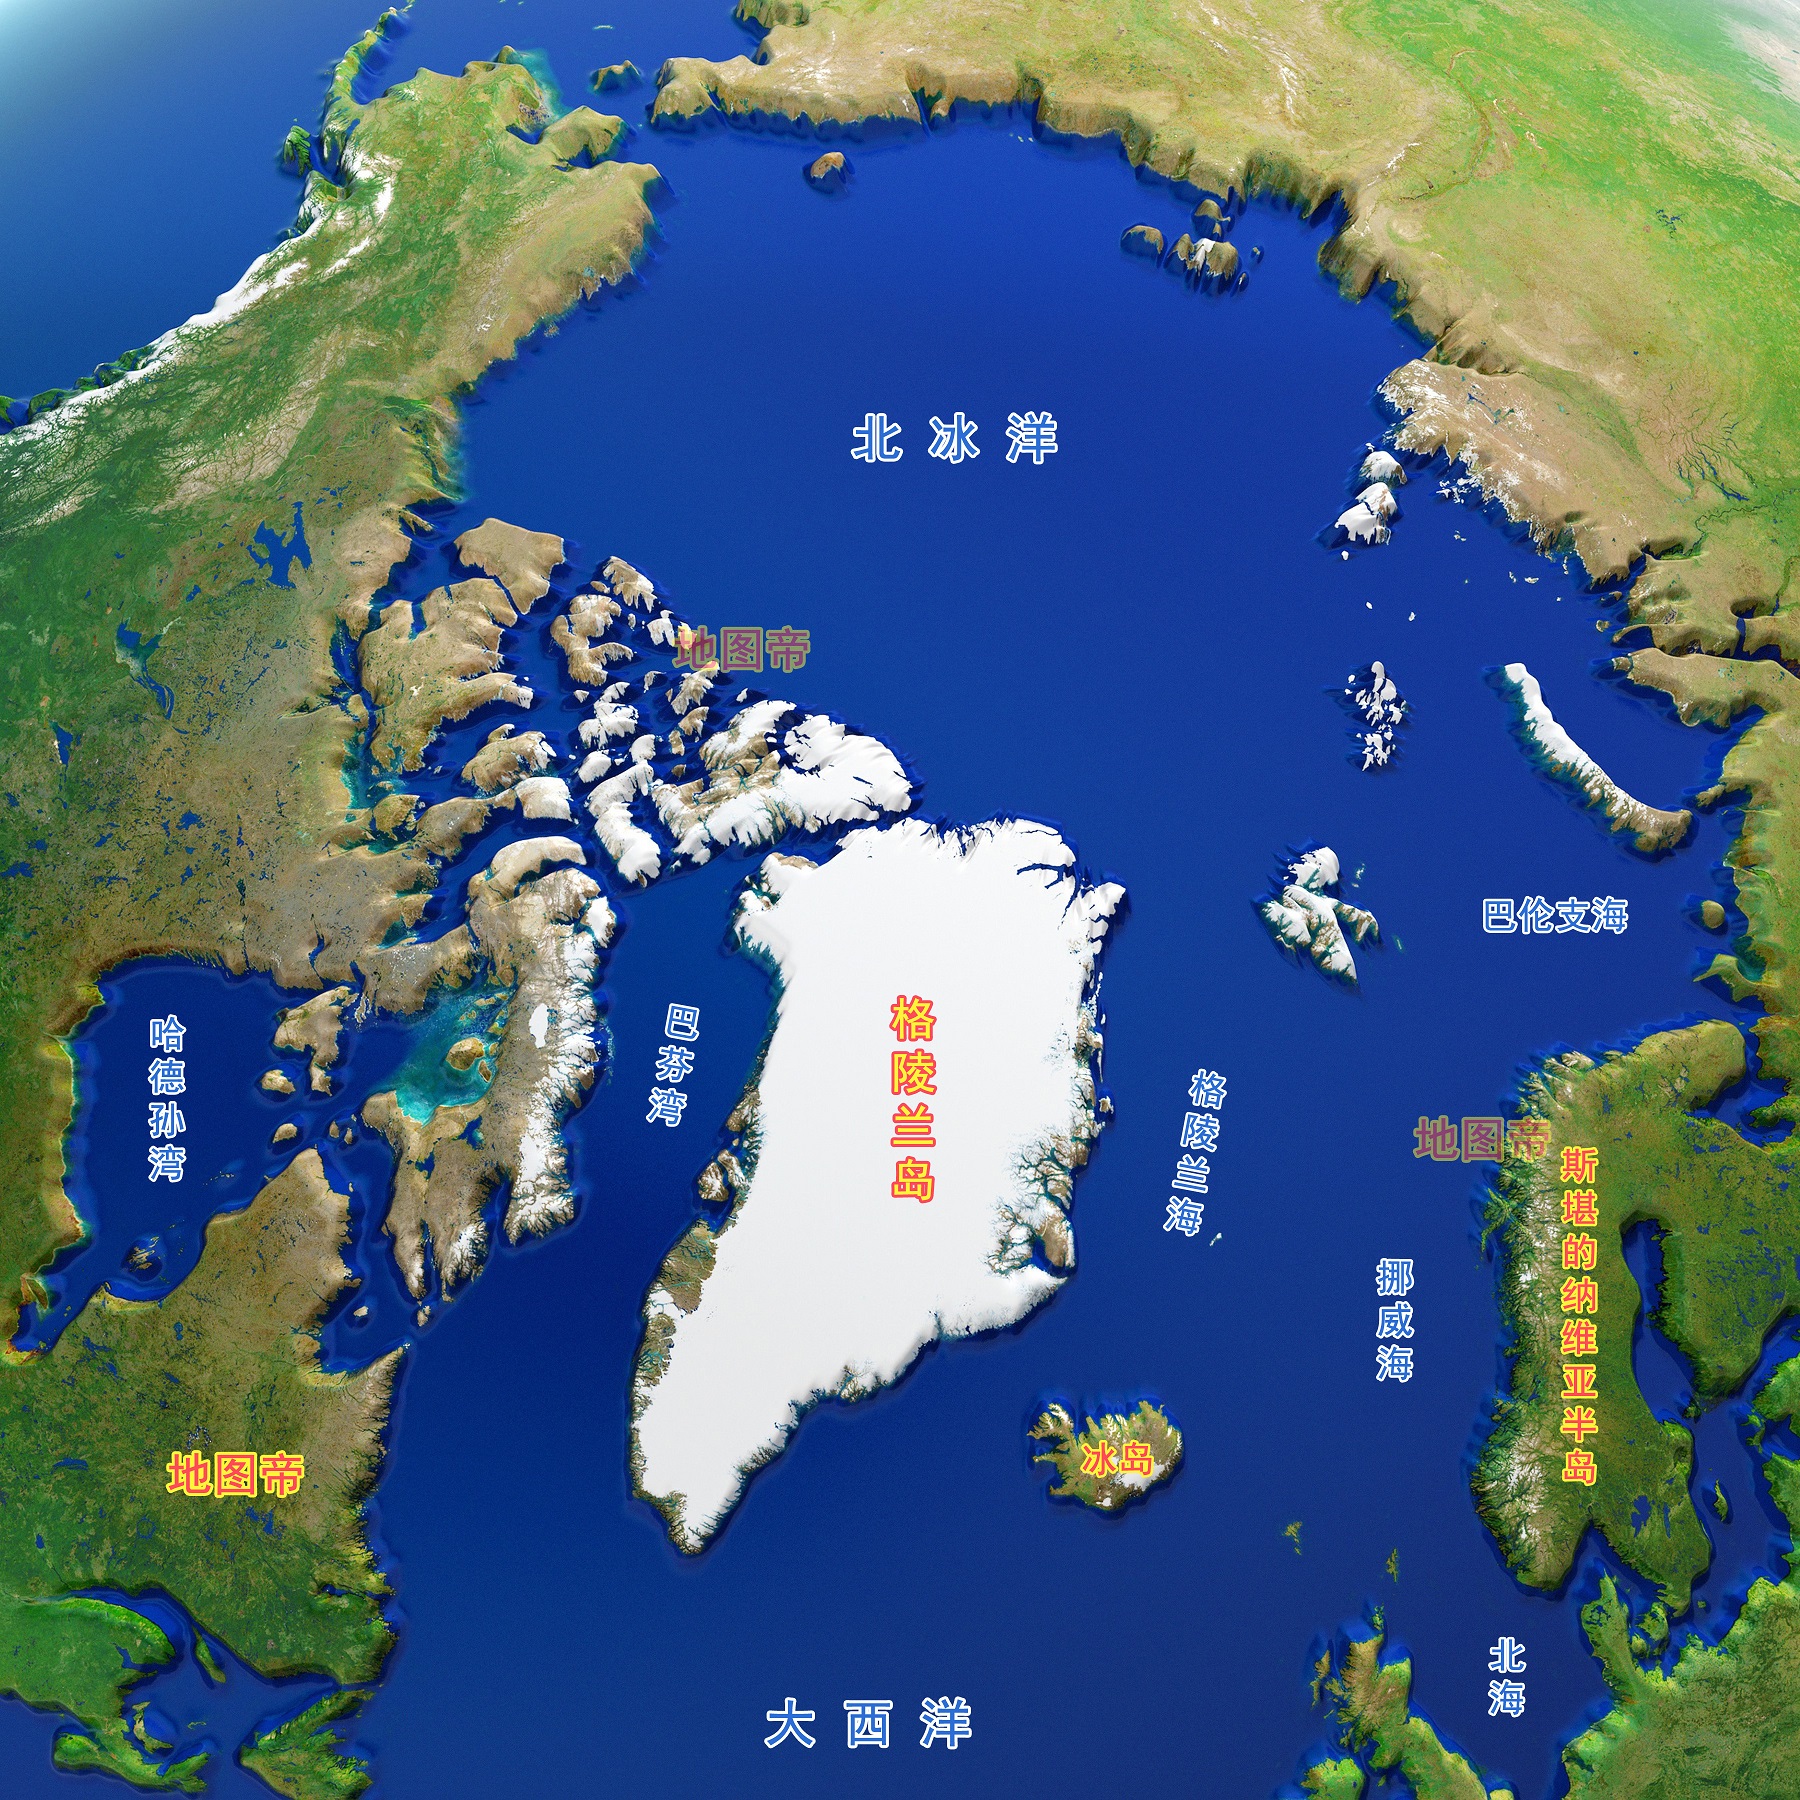 原创二战后美国把格陵兰岛还给丹麦现在为何想买格陵兰岛